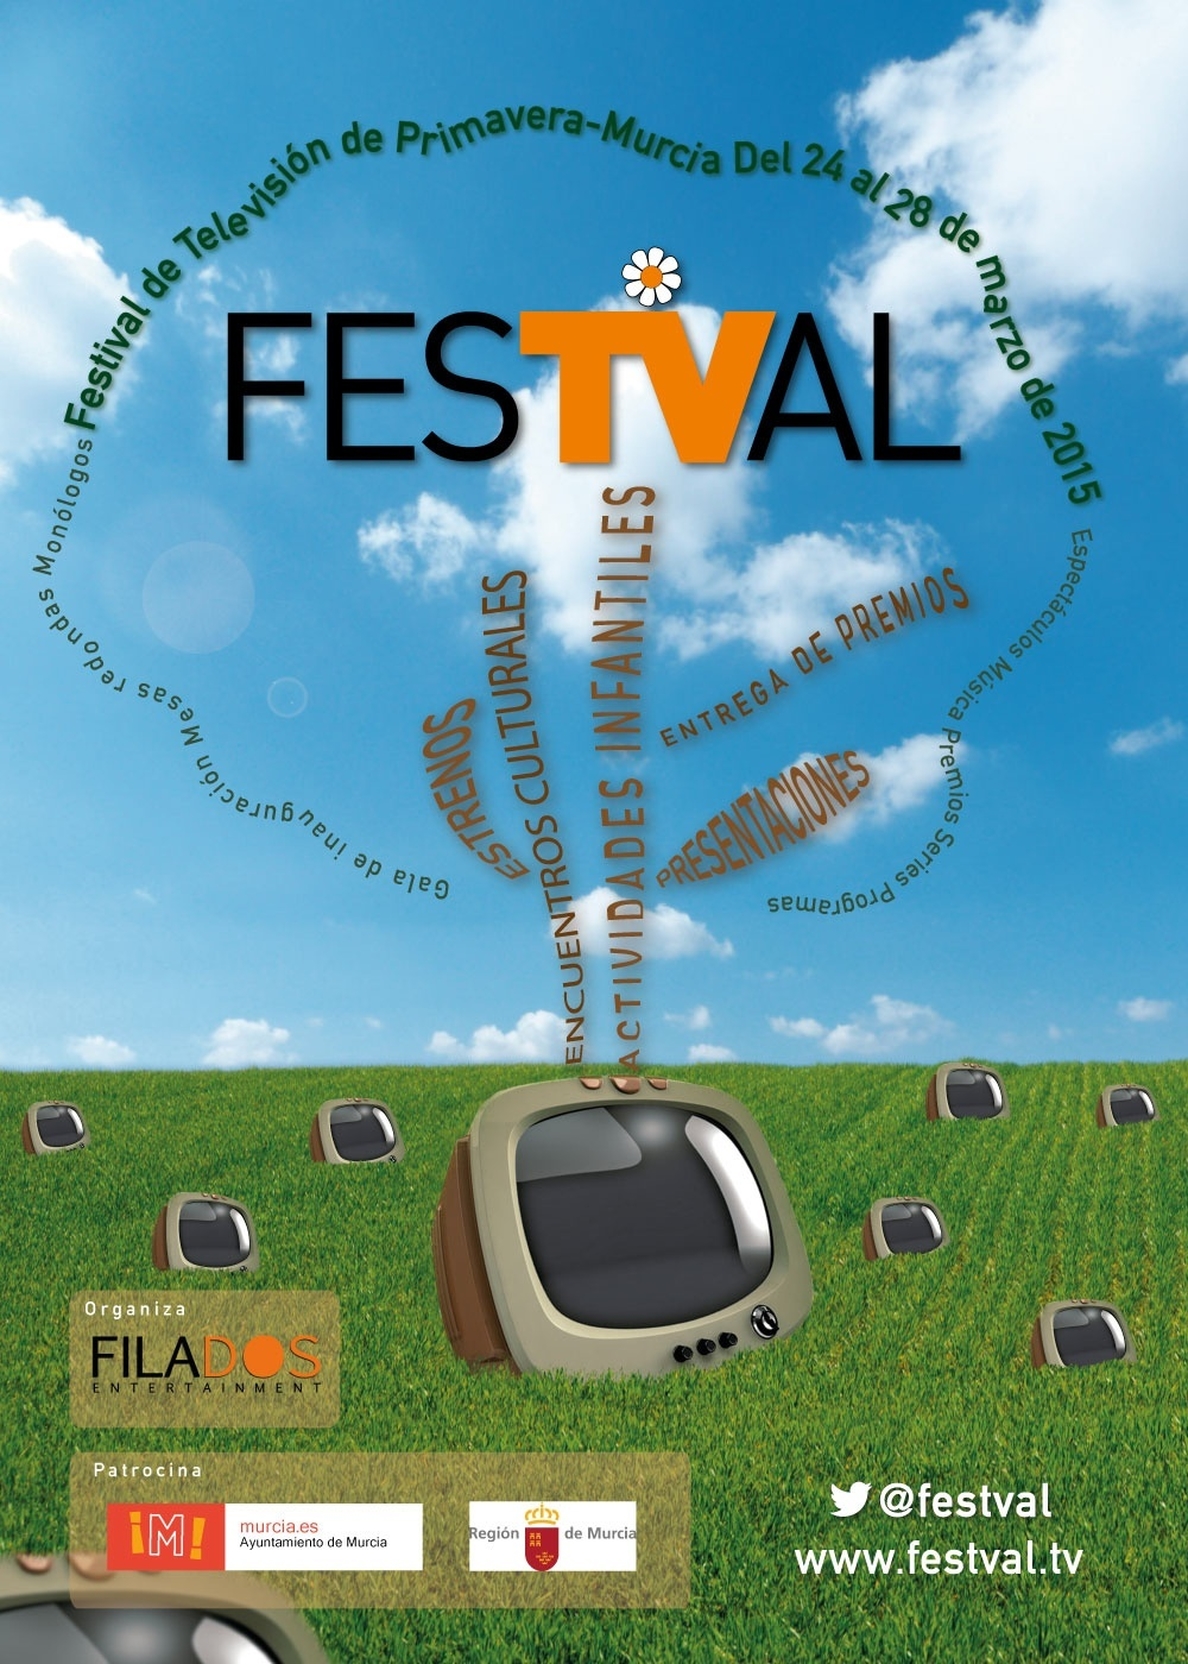 FesTVal celebrará una edición especial de primavera en Murcia del 24 al 28 de marzo